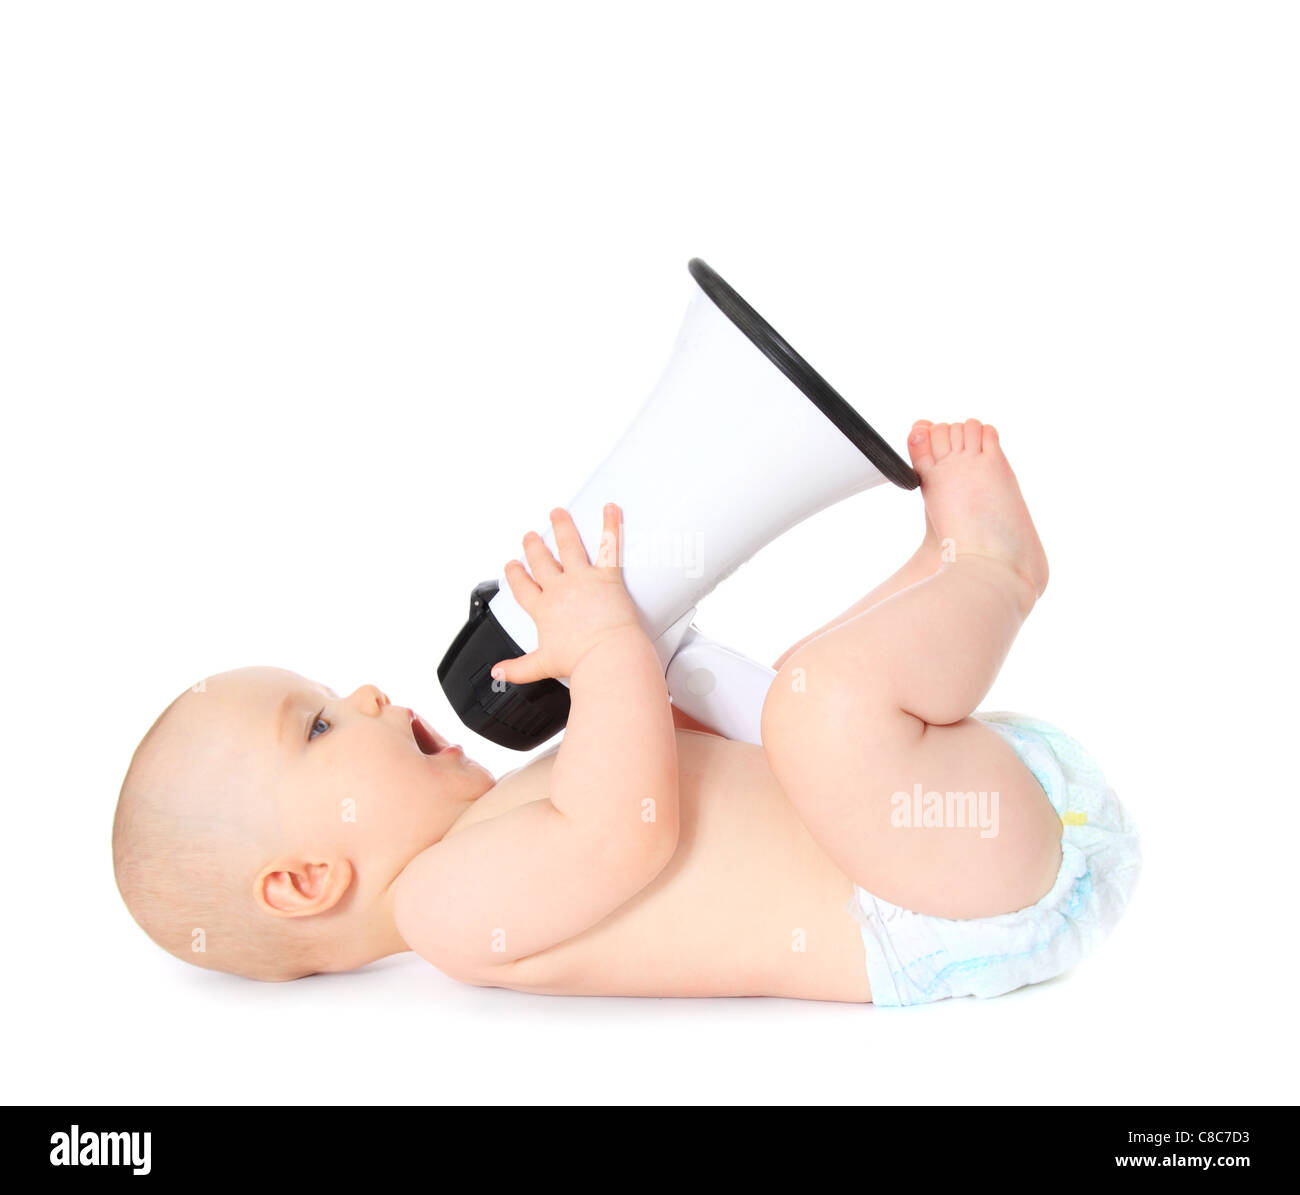 Mignon bébé jouant avec mégaphone. Le tout sur fond blanc. Banque D'Images